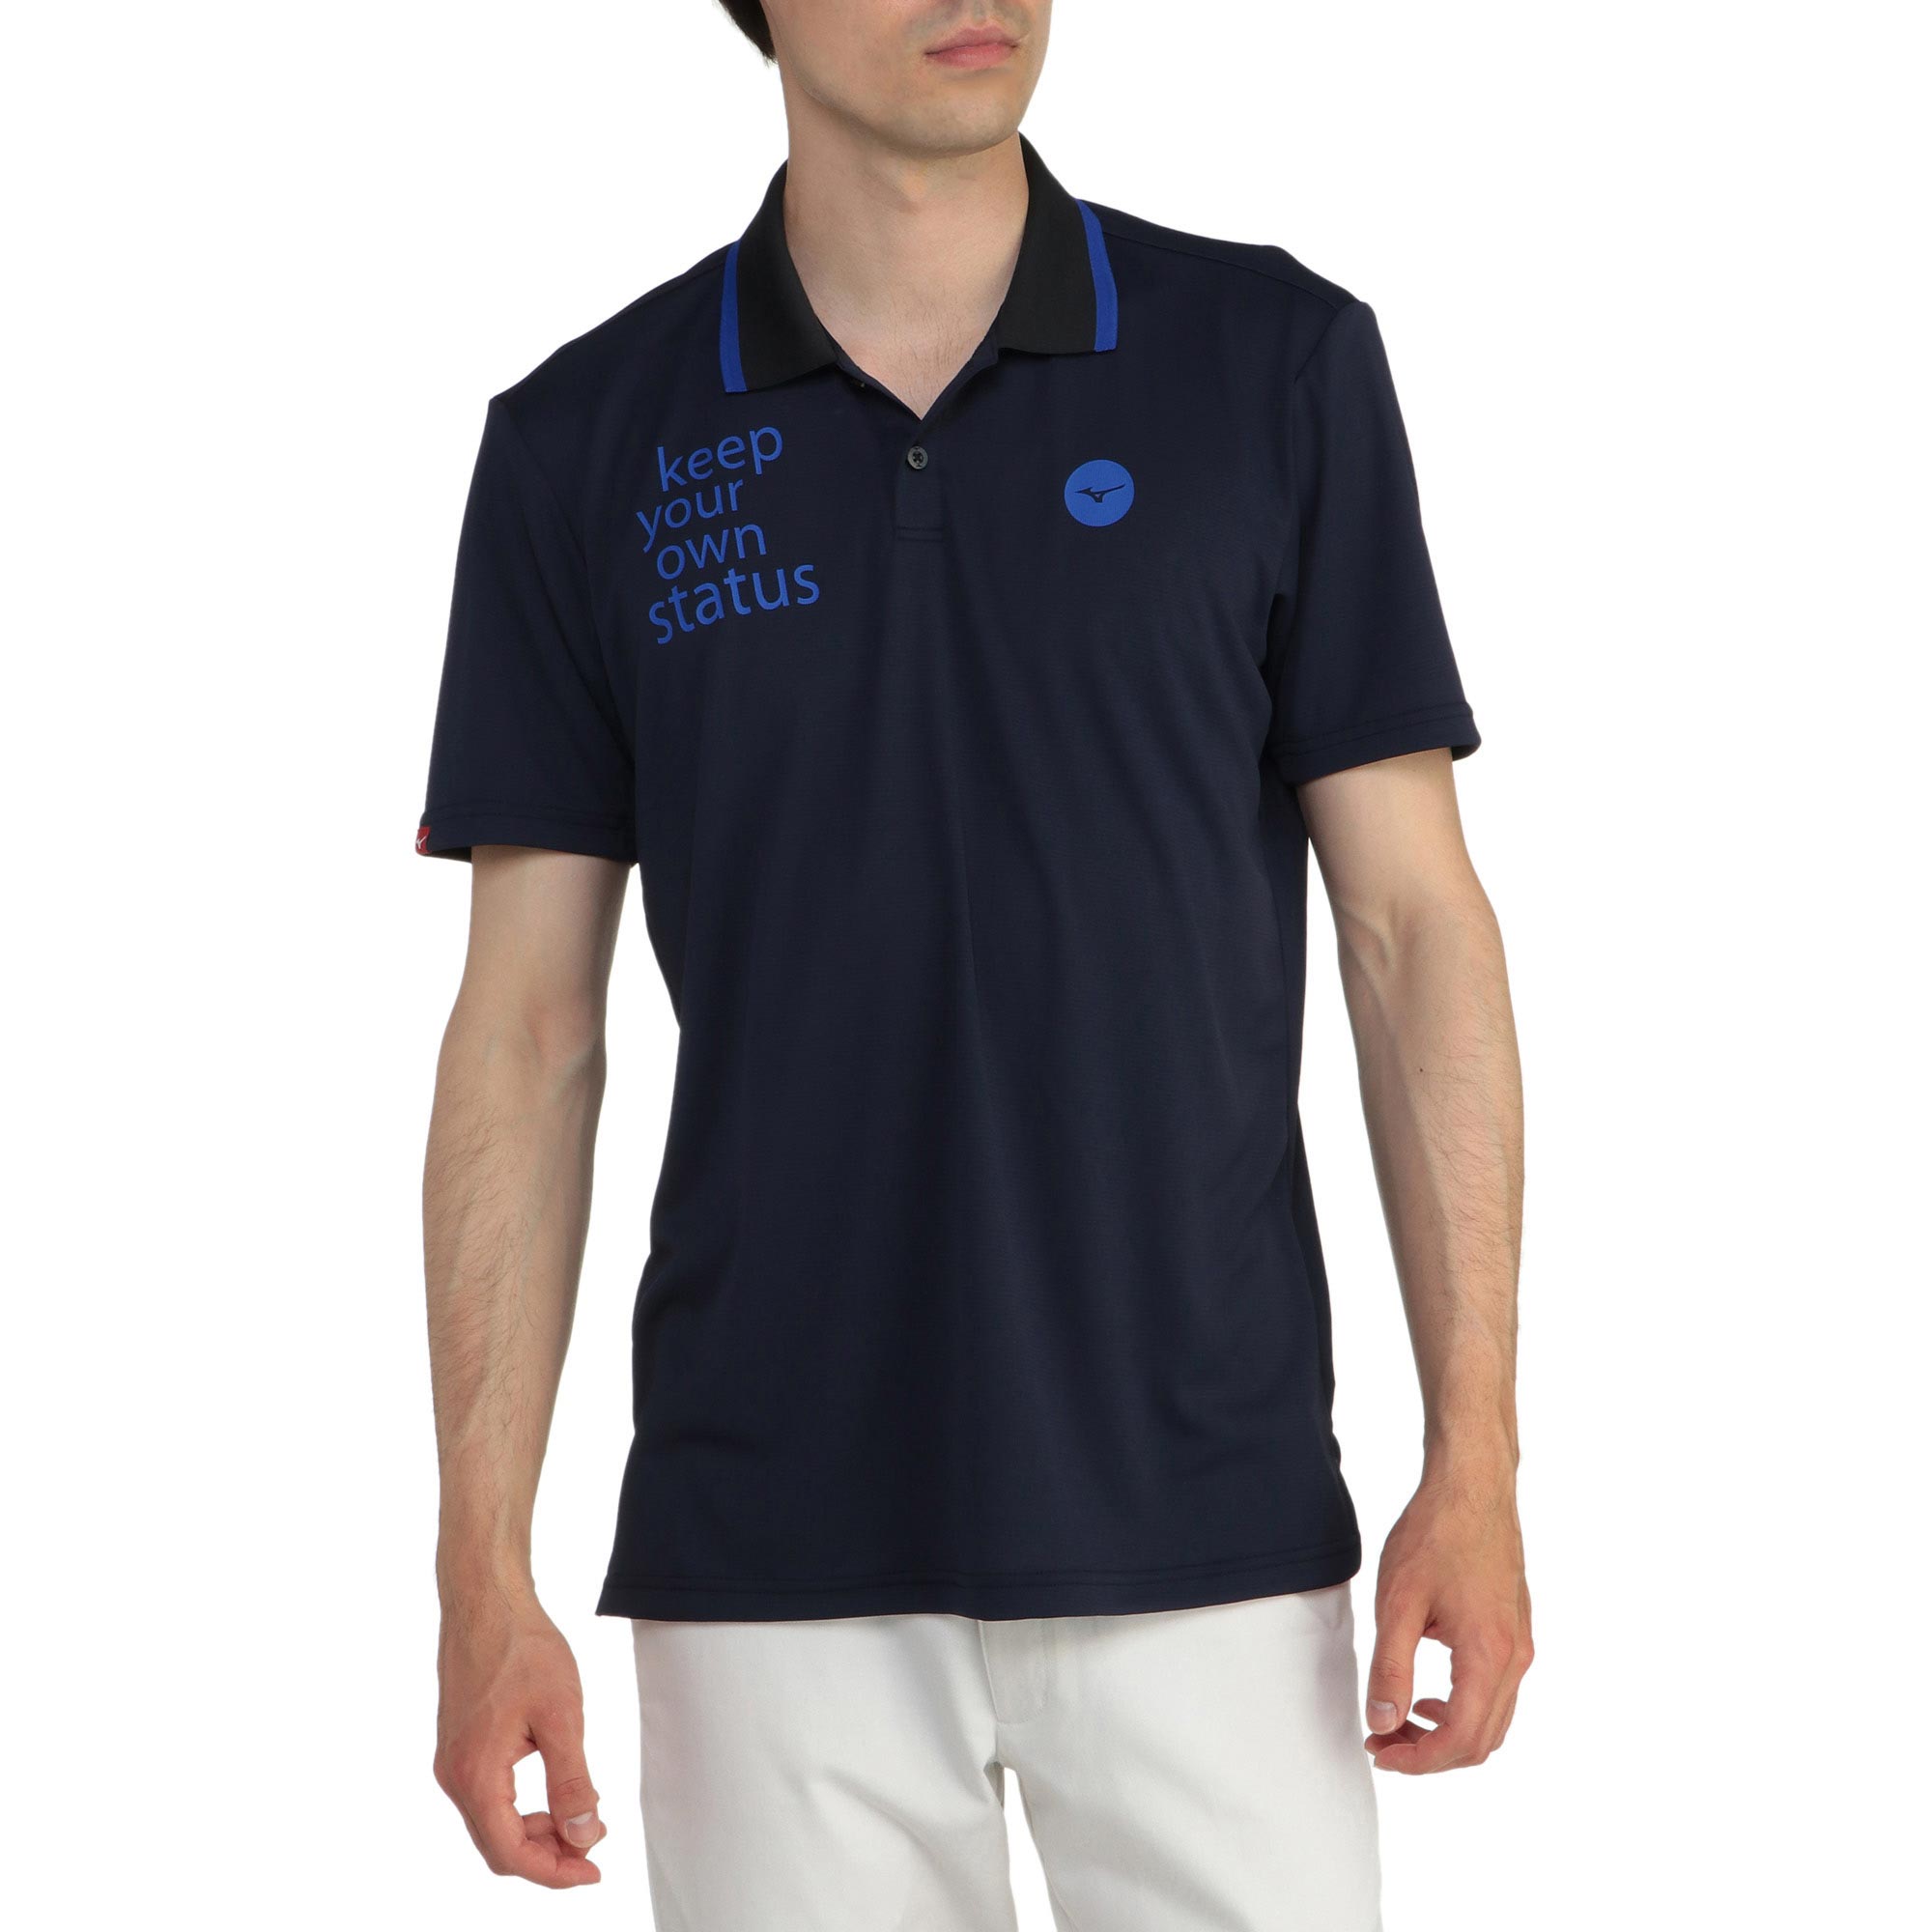 半袖ポロ衿シャツ[メンズ]|E2MA2015|半袖シャツ|ゴルフウエア